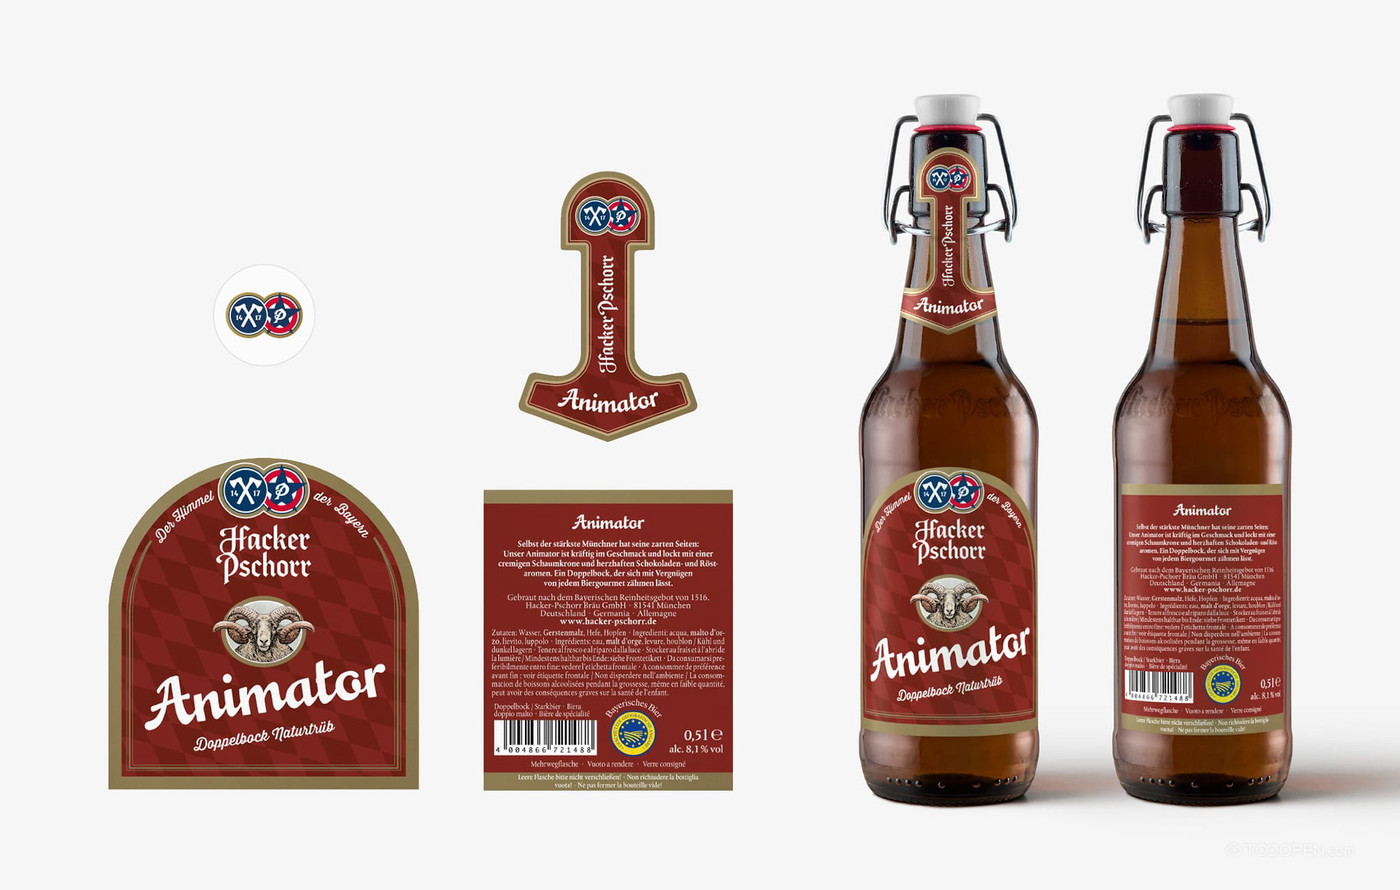 国外慕尼黑啤酒饮料包装设计欣赏-02